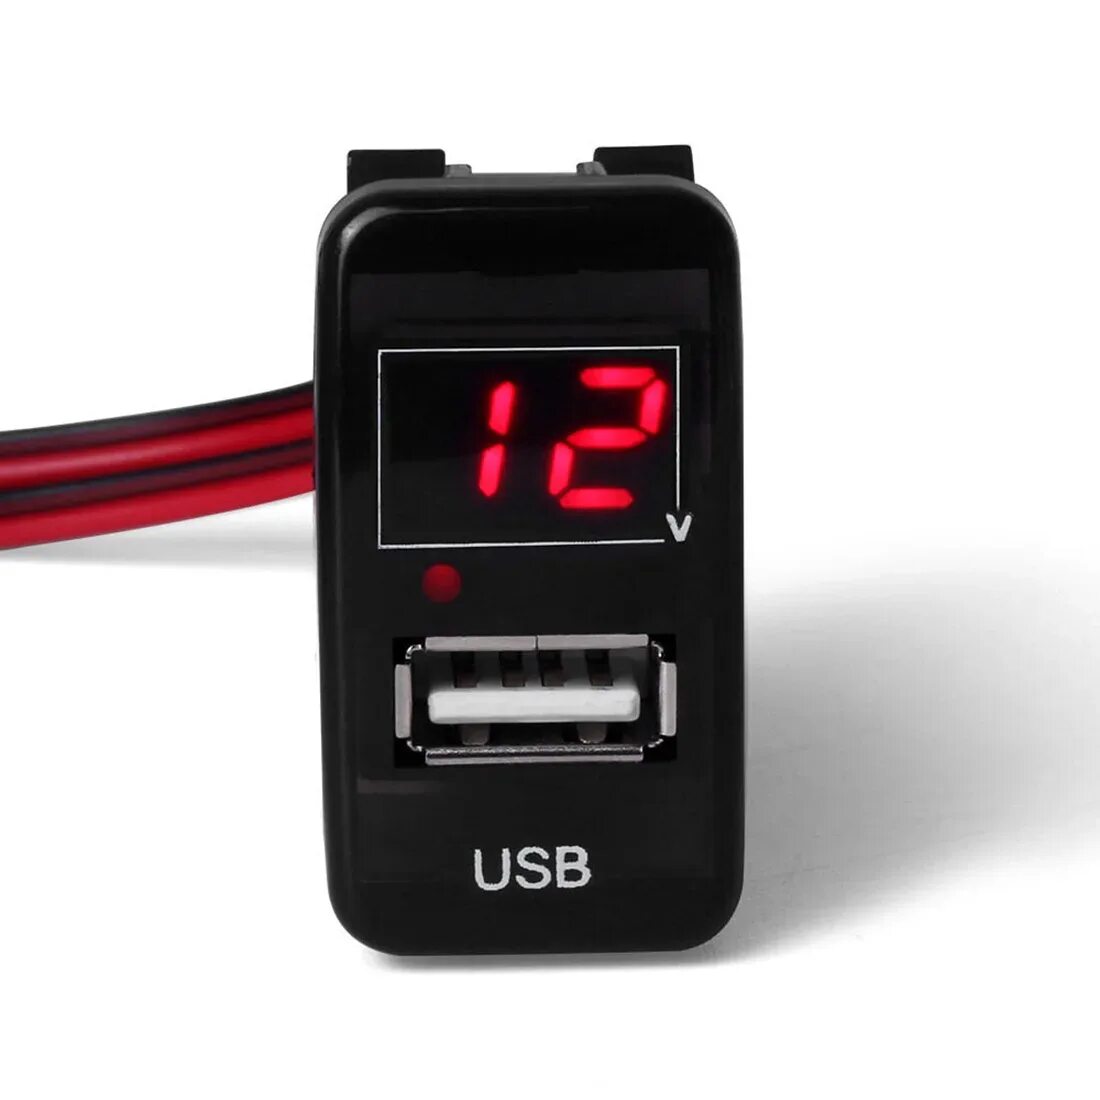 Вольтметр автомобильный цифровой 12v с юсб зарядкой. Вольтметр автомобильный цифровой 12v 2'1. USB зарядка плюс вольтметр цифровой. Вольтметр-амперметр цифровой с зарядкой USB.